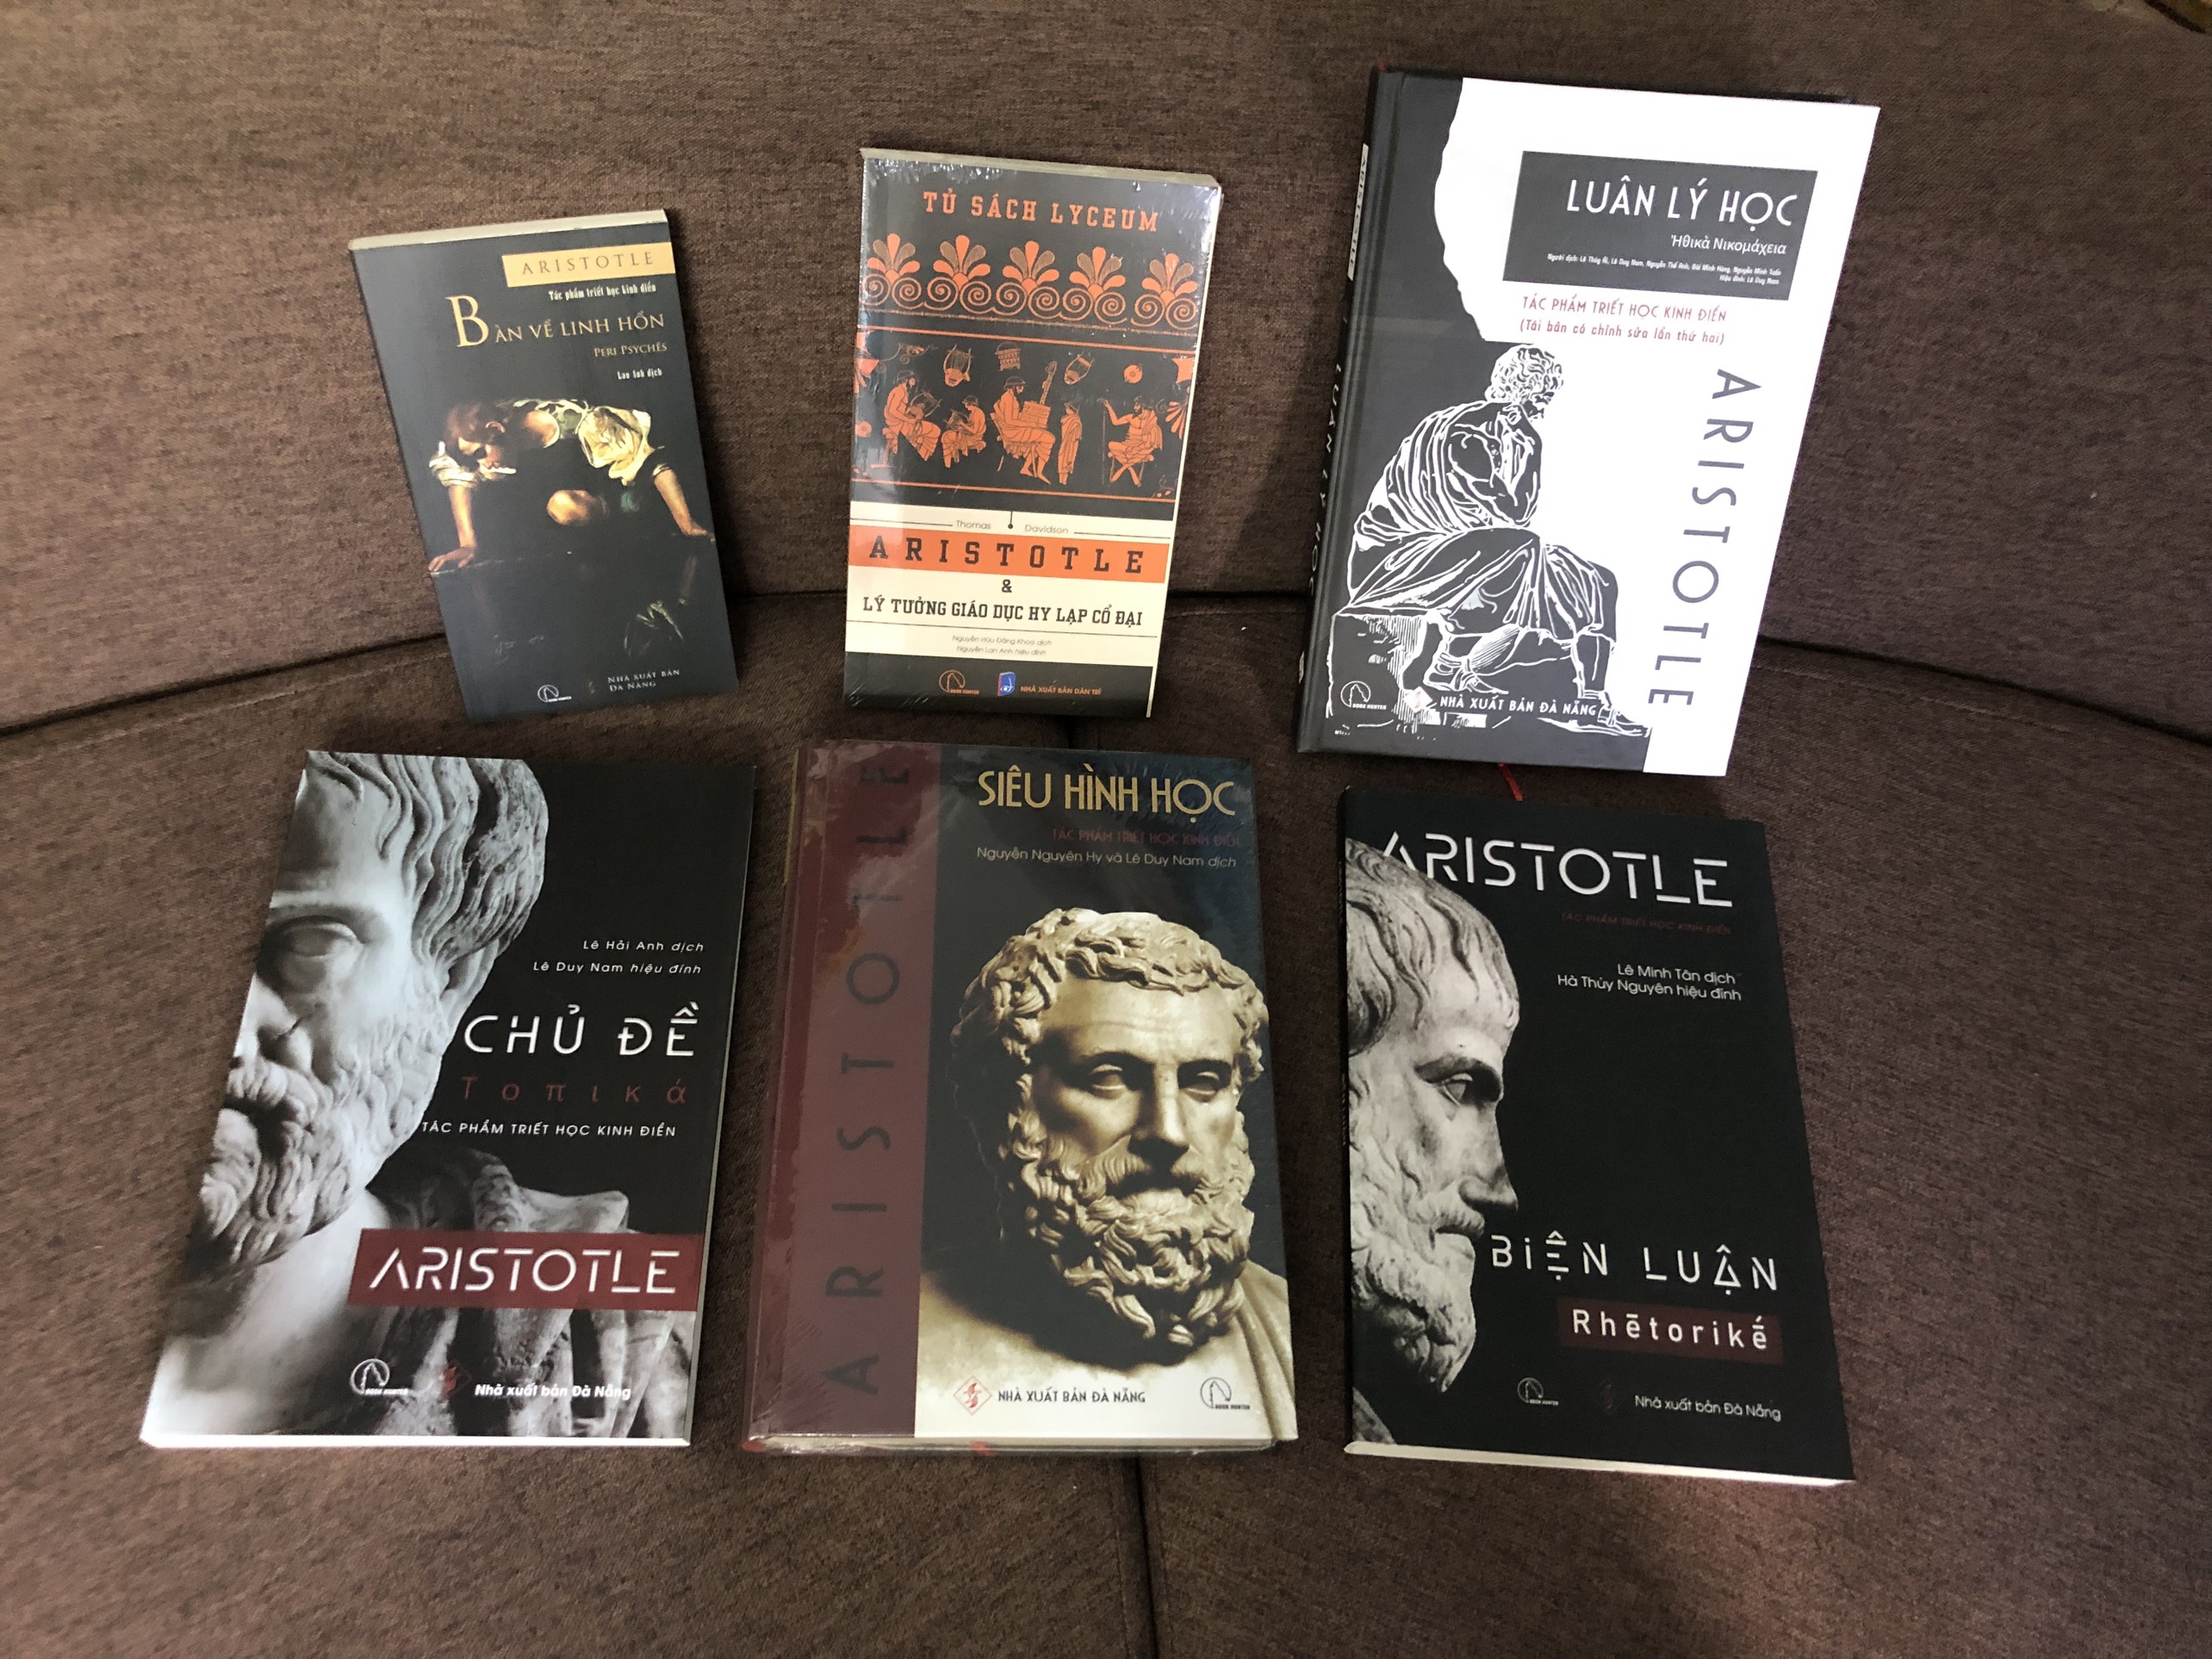 Bộ 6 cuốn ARISTOTLE triết học kinh điển: Siêu hình học + Luân lý học + Biện luận + Chủ đề + Bàn về linh hồn + Lý tưởng giáo dục Hy Lạp cổ đại (Bộ Sách Thế Giới Quan Của Aristotle)